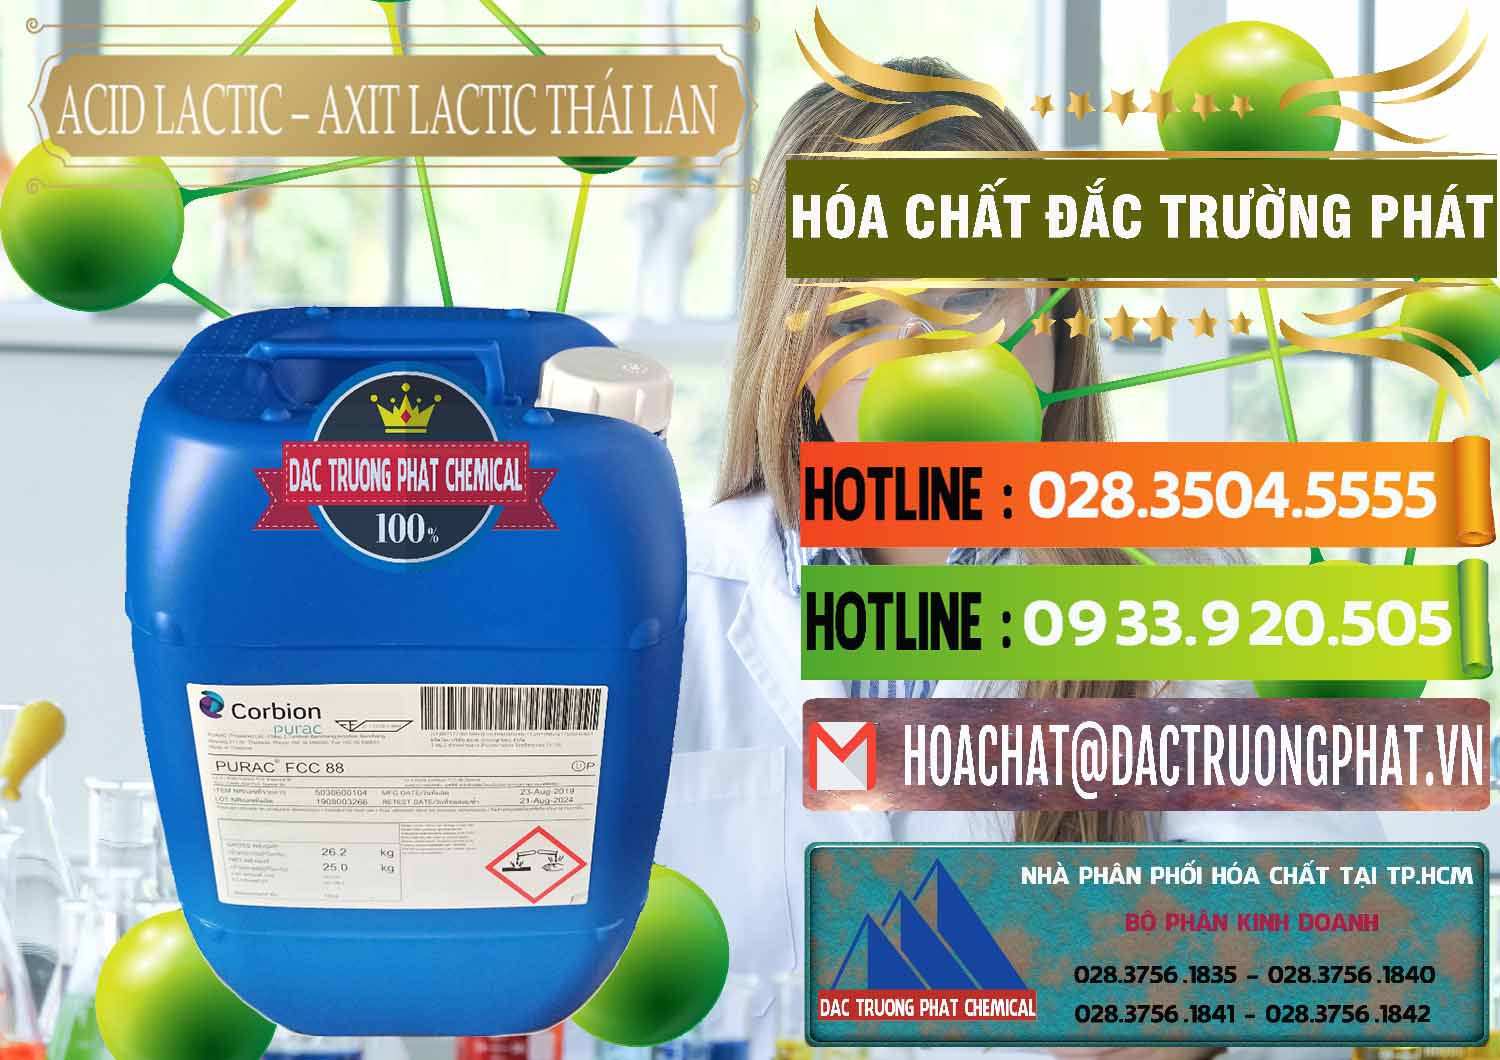 Nơi bán & cung cấp Acid Lactic – Axit Lactic Thái Lan Purac FCC 88 - 0012 - Nhà phân phối _ cung cấp hóa chất tại TP.HCM - cungcaphoachat.com.vn